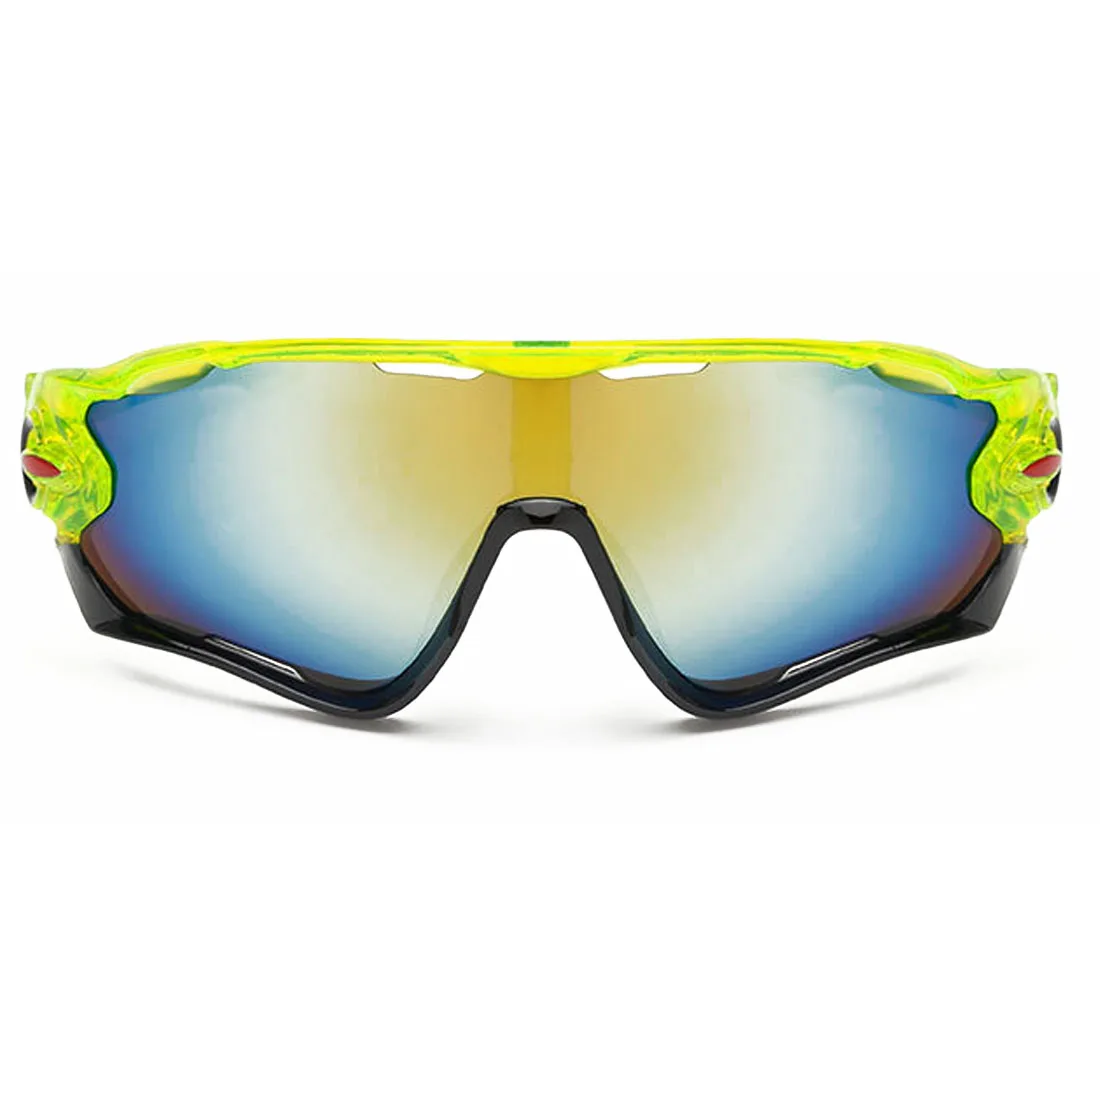 Дизайн Велоспорт велосипед очки велосипедные спортивные очки походные мужские мотоциклетные солнцезащитные очки Светоотражающие взрывозащищенные очки